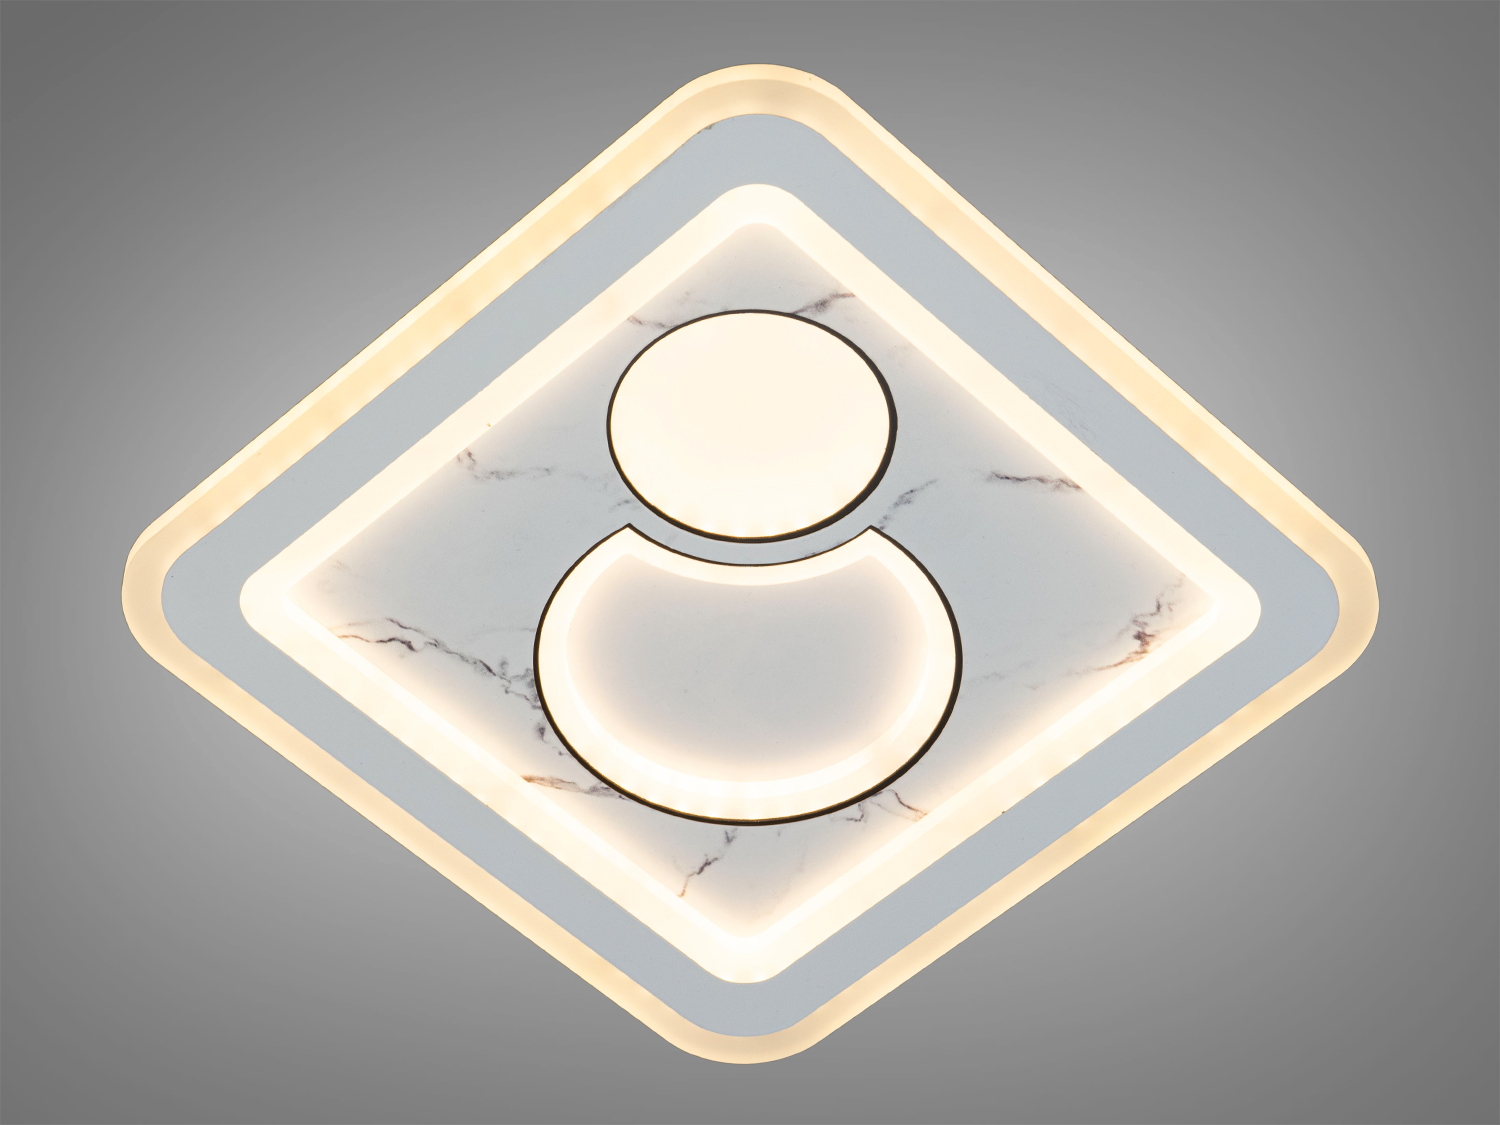 Цей світлодіодний світильник 52 Вт зачаровує своєю формою та функціональністю, яка дозволяє йому вливатися в будь-який інтер'єрний простір з легкістю. Його особливість полягає не тільки в полівалентності використання, але й в увазі до деталей, яка виявляється в кожному куточку цього шедевру освітлювальної техніки.Унікальність цього світильника в його універсальності, робить його ідеальним для використання в різних функціональних зонах: як настінний світильник він може додати акцент до коридору або вітальні, як накладний точковий світильник – стане виразним елементом у ванній кімнаті або над стільницею, а як стельова люстра – центральною декоративною точкою в будь-якому приміщенні.Розсіювач, виконаний з литого акрилу, служить не тільки для рівномірного розподілу світла, але й як естетичний акцент, що відзеркалює сучасні тенденції дизайну. Контраст між матовою поверхнею і чистими, різкими лініями створює візуальний інтерес, що приваблює погляд і робить світильник візитною карткою будь-якої кімнати.Як світлодіодний світильник на кухню, він виблискує практичністю, забезпечуючи яскраве і фокусоване світло, яке надзвичайно важливе для кулінарних процесів та сімейних зборів. Його присутність в кухонному просторі додає сучасного шарму, підкреслюючи чистоту ліній та простоту сучасного життя.У спальні цей світлодіодний світильник трансформується в джерело спокою, створюючи атмосферу затишку та релаксації. М'яке світло, що розсіюється через акриловий розсіювач, обволікає простір, ніби туман на світанку, даруючи відчуття захищеності та тепла.Для тих, хто прагне до доступного, але вишуканого рішення для своєї оселі, пропозиція купити світлодіодний світильник дешево у магазині 